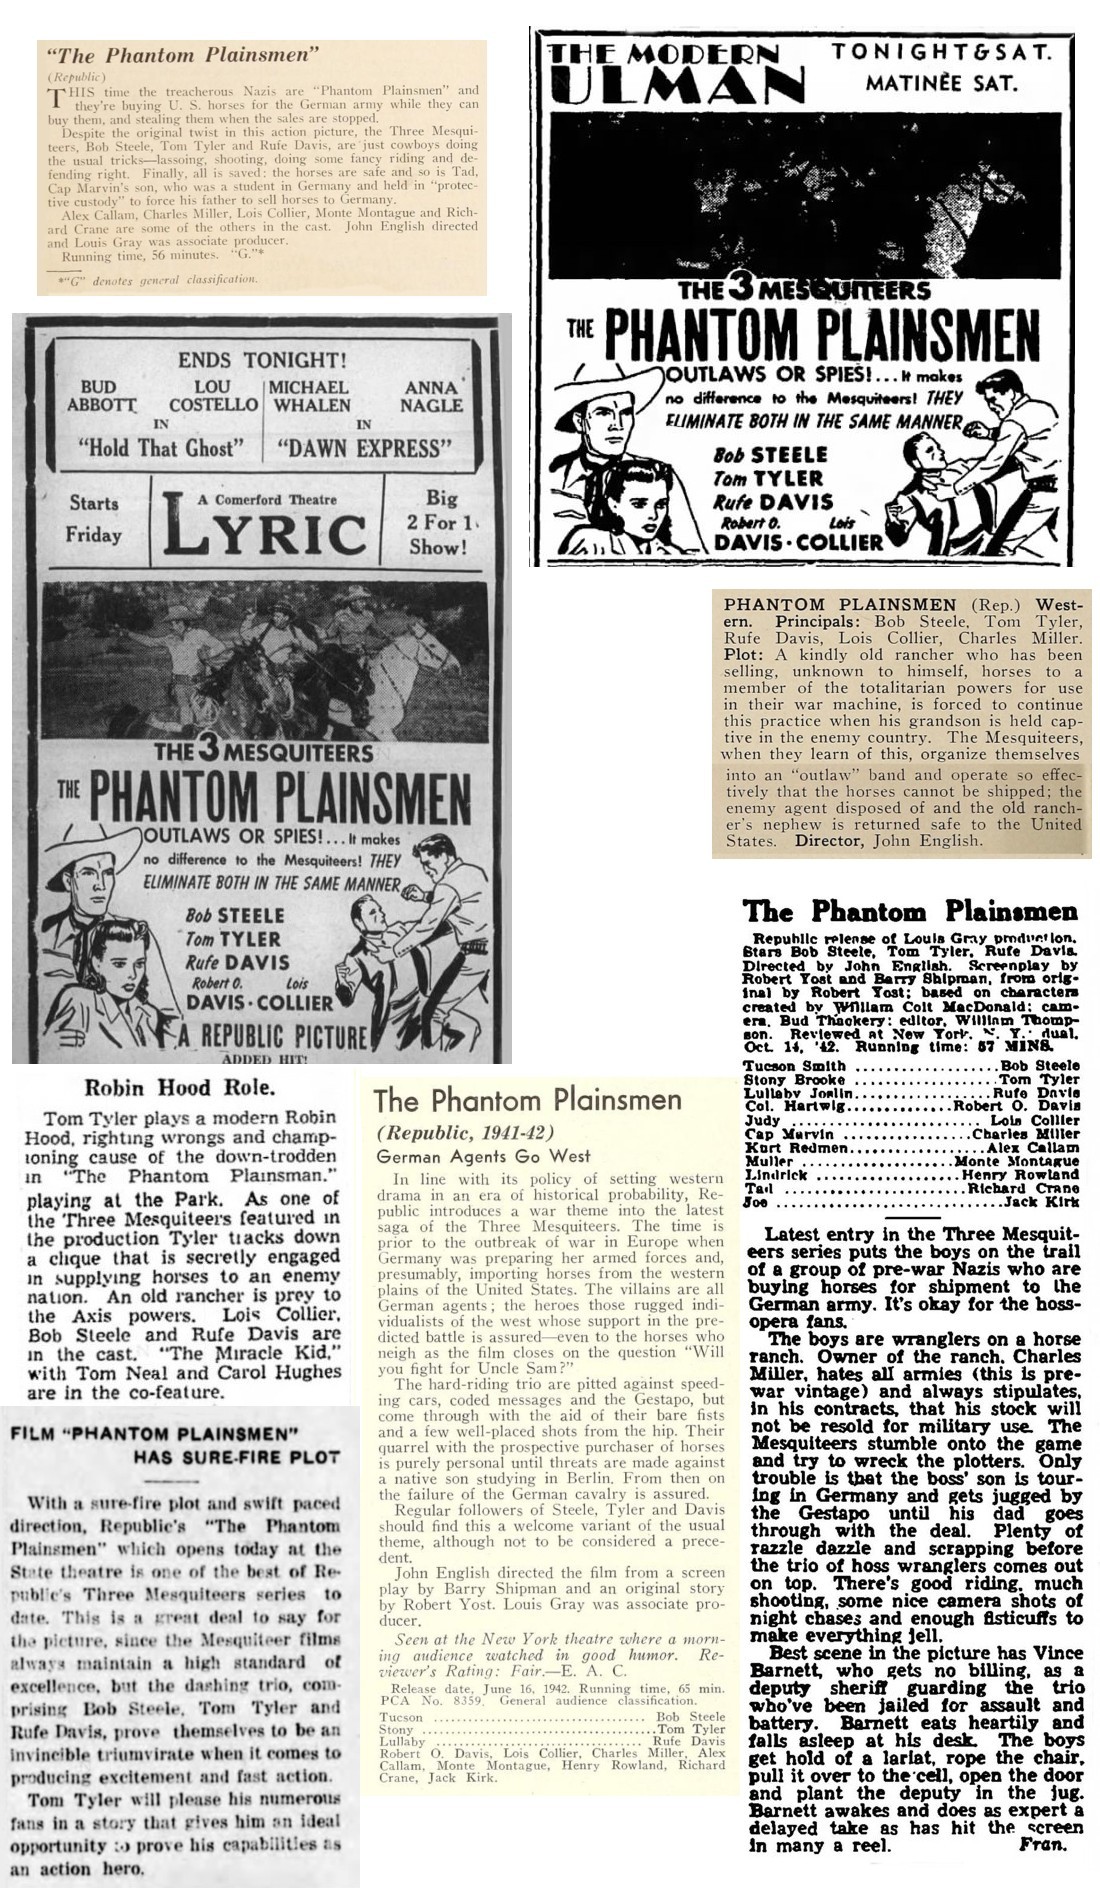 The Phantom Plainsmen film reviews cinema ads